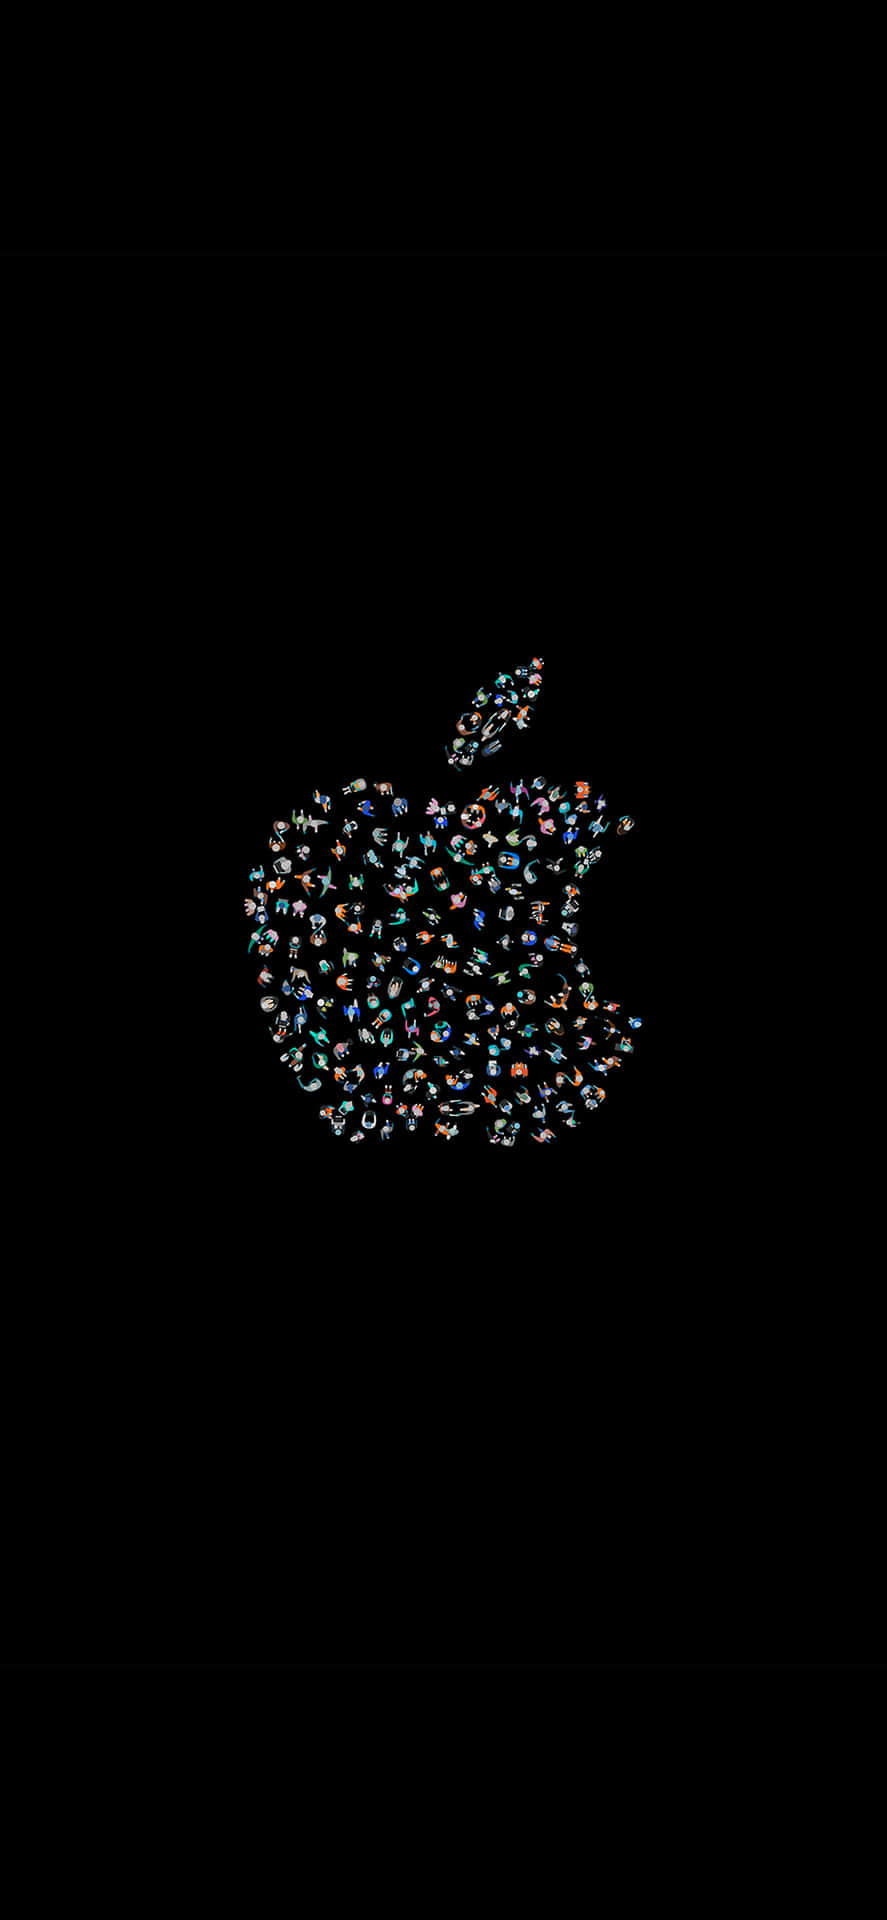 Innovativlogotyp, Fantastisk Äpple Hd-iphone. Wallpaper